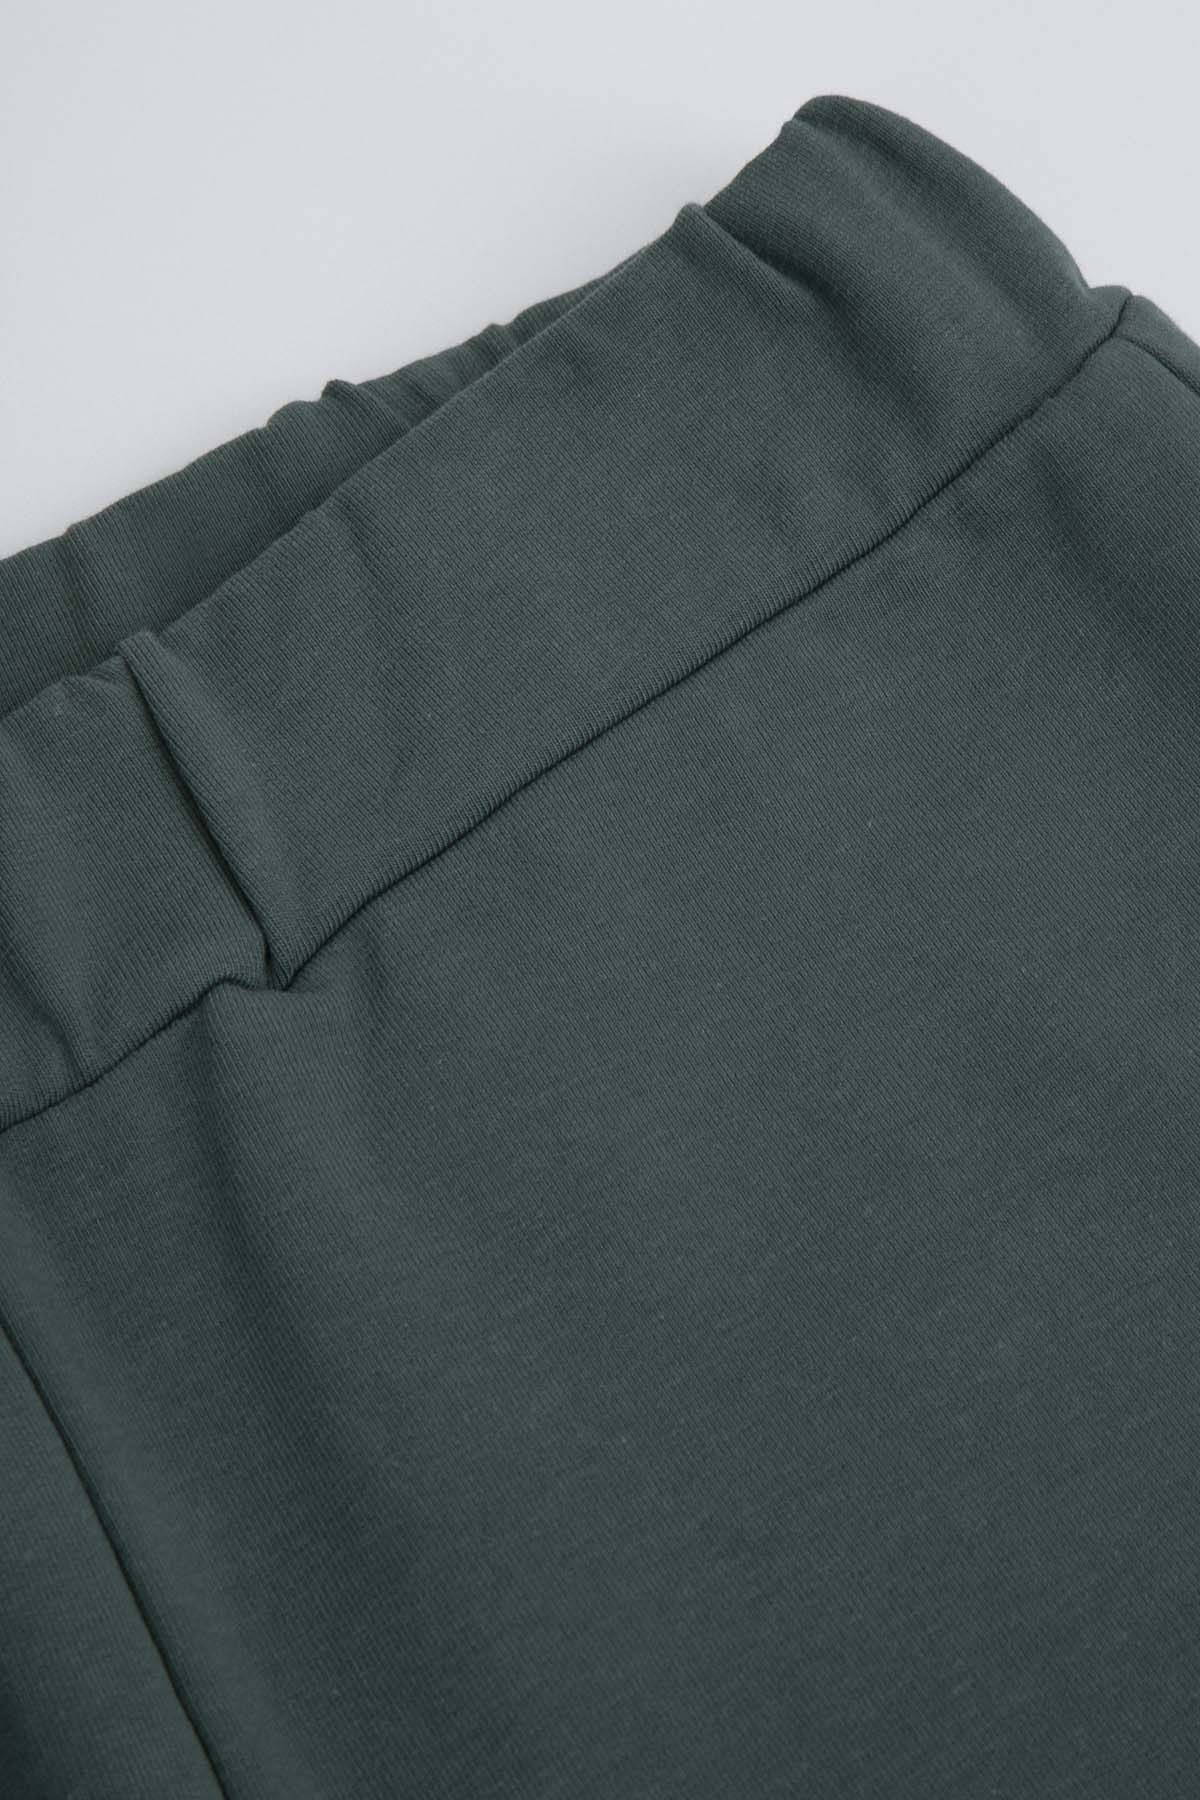 Spodnie dresowe zielone z kieszeniami 2219474